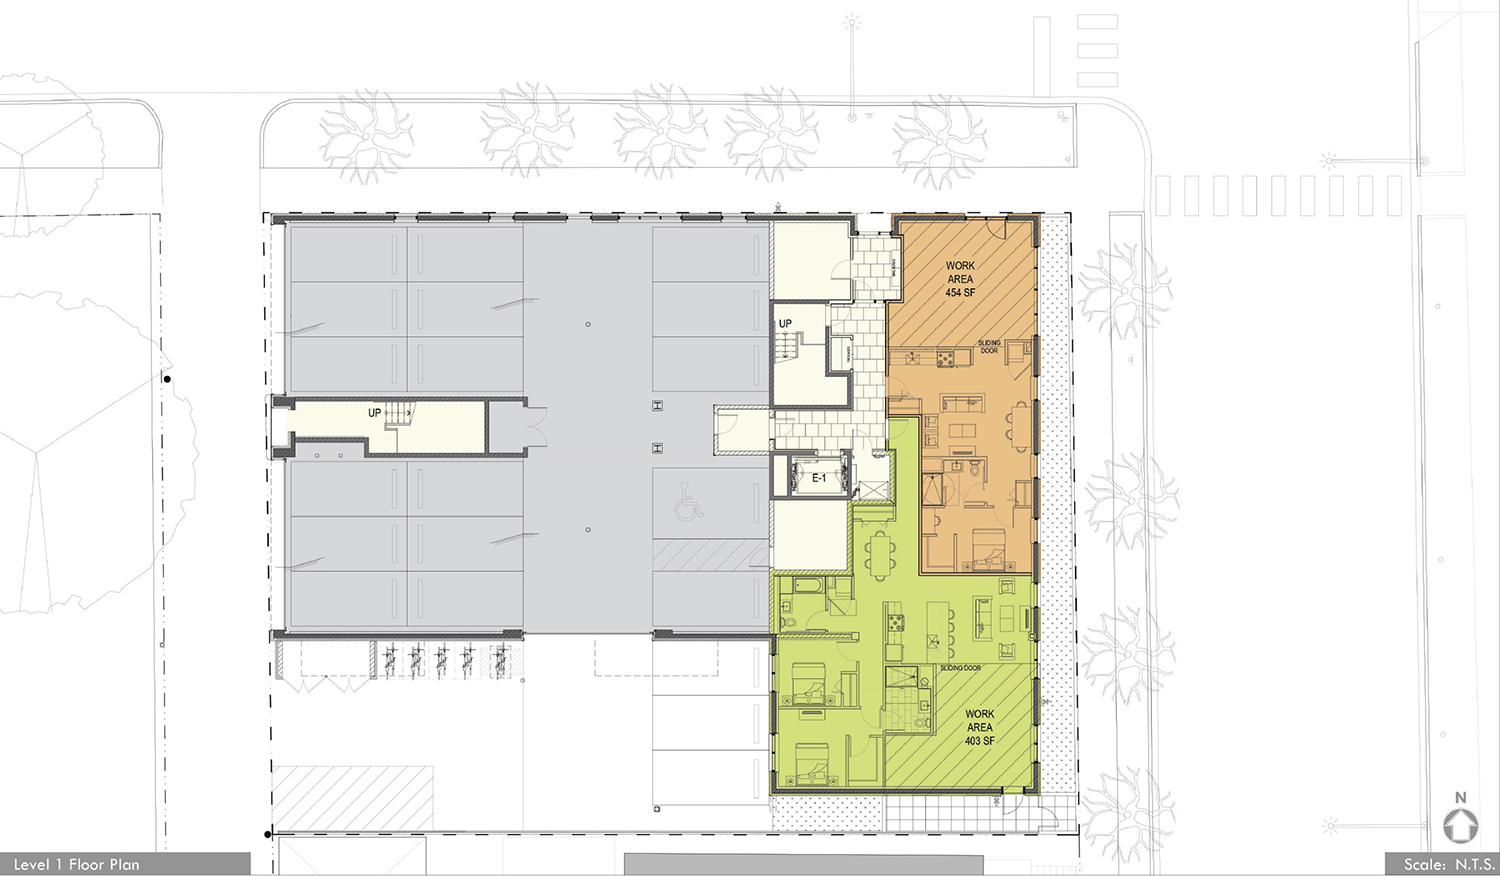 Ground Floor Plan for 2803 W Henderson Street. Rendering by Hirsch MPG